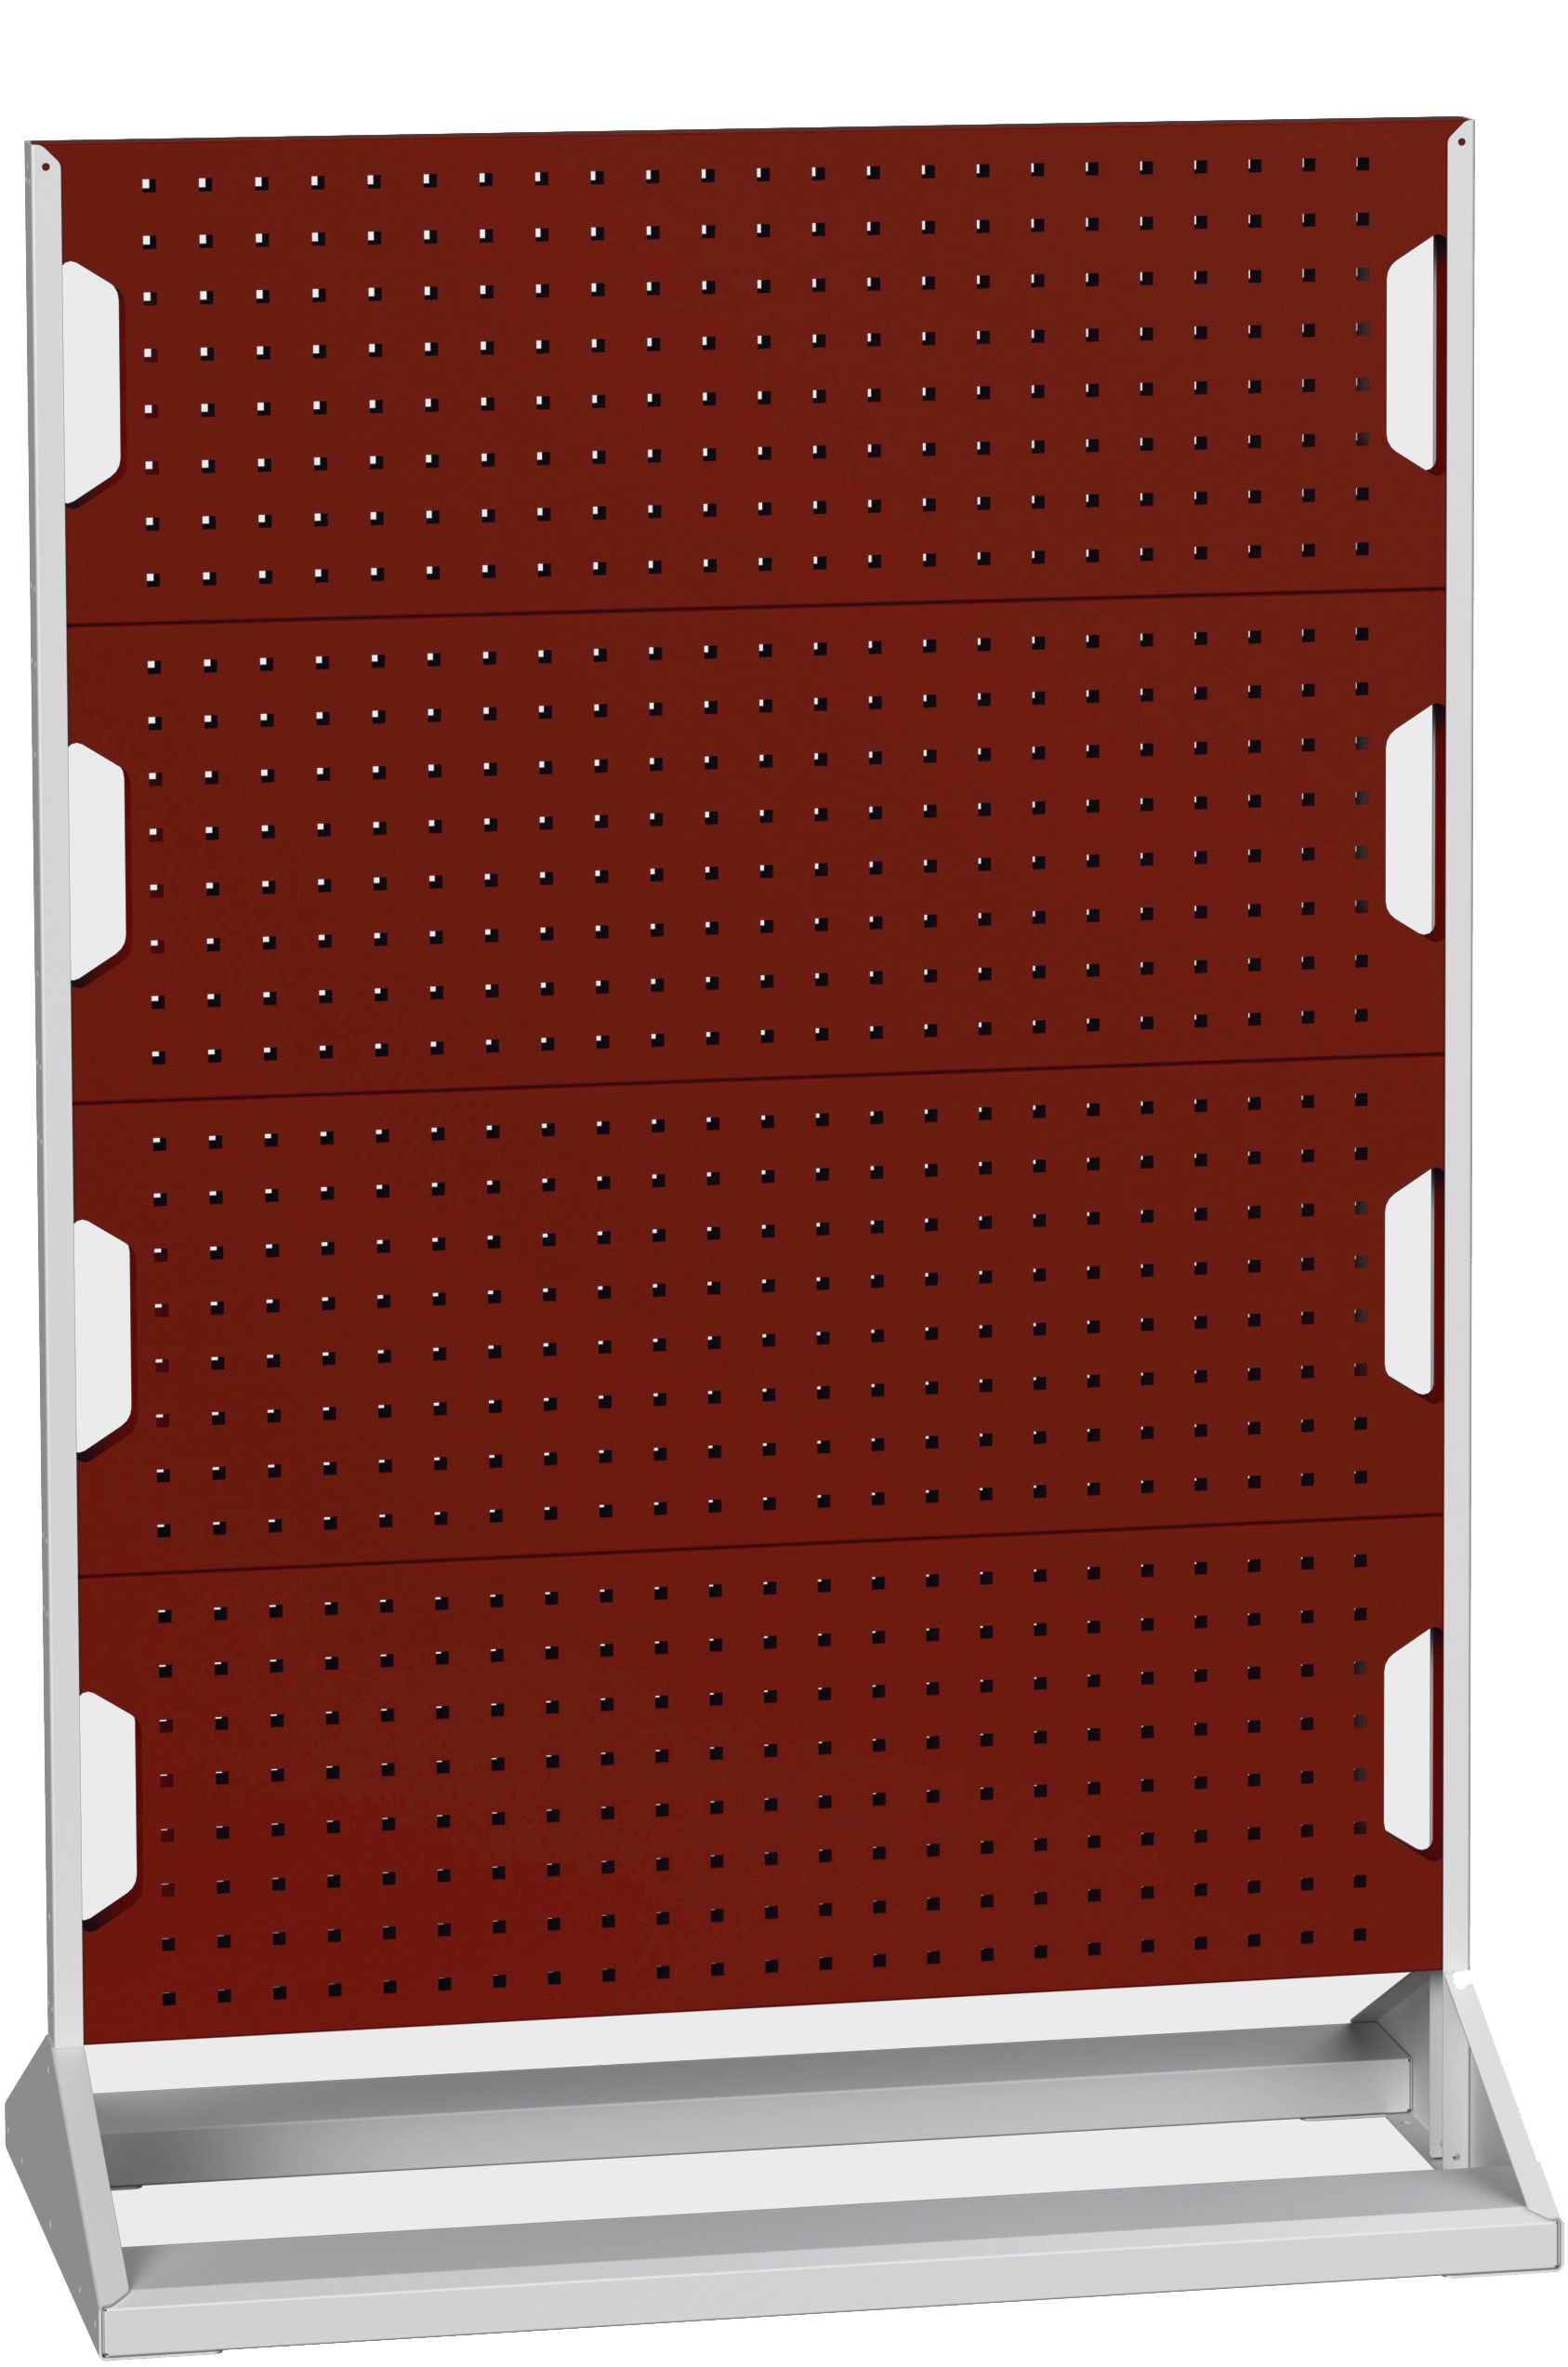 Bott Perfo Panel Rack (Double Sided) - 16917101.24V